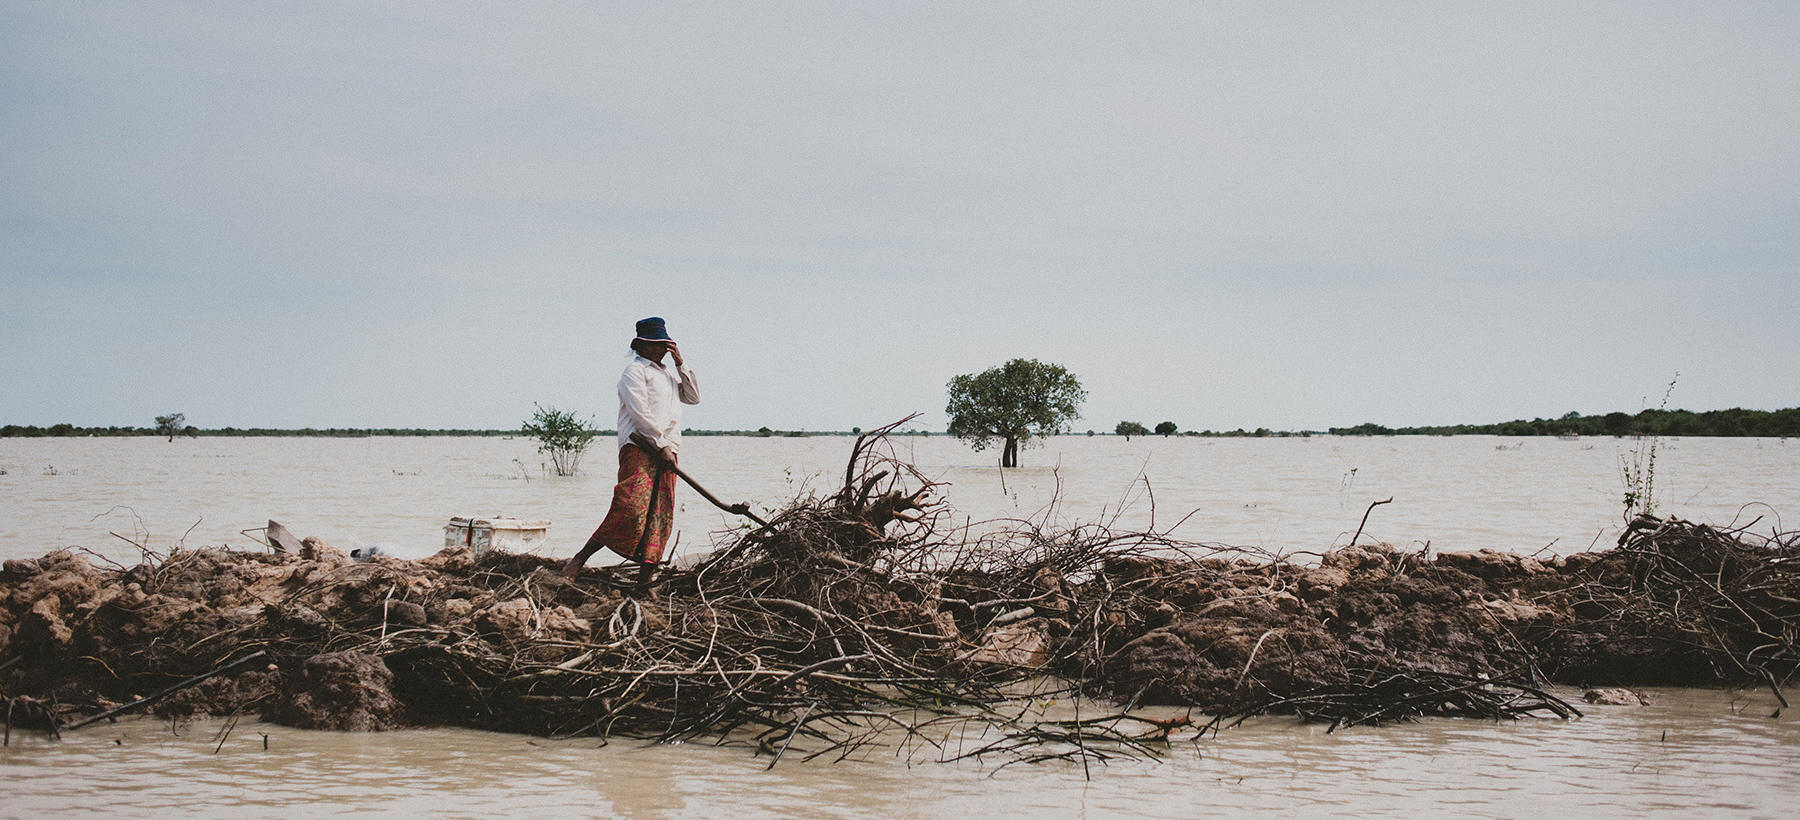 Fotografiranje delavca na polju Kambodže.